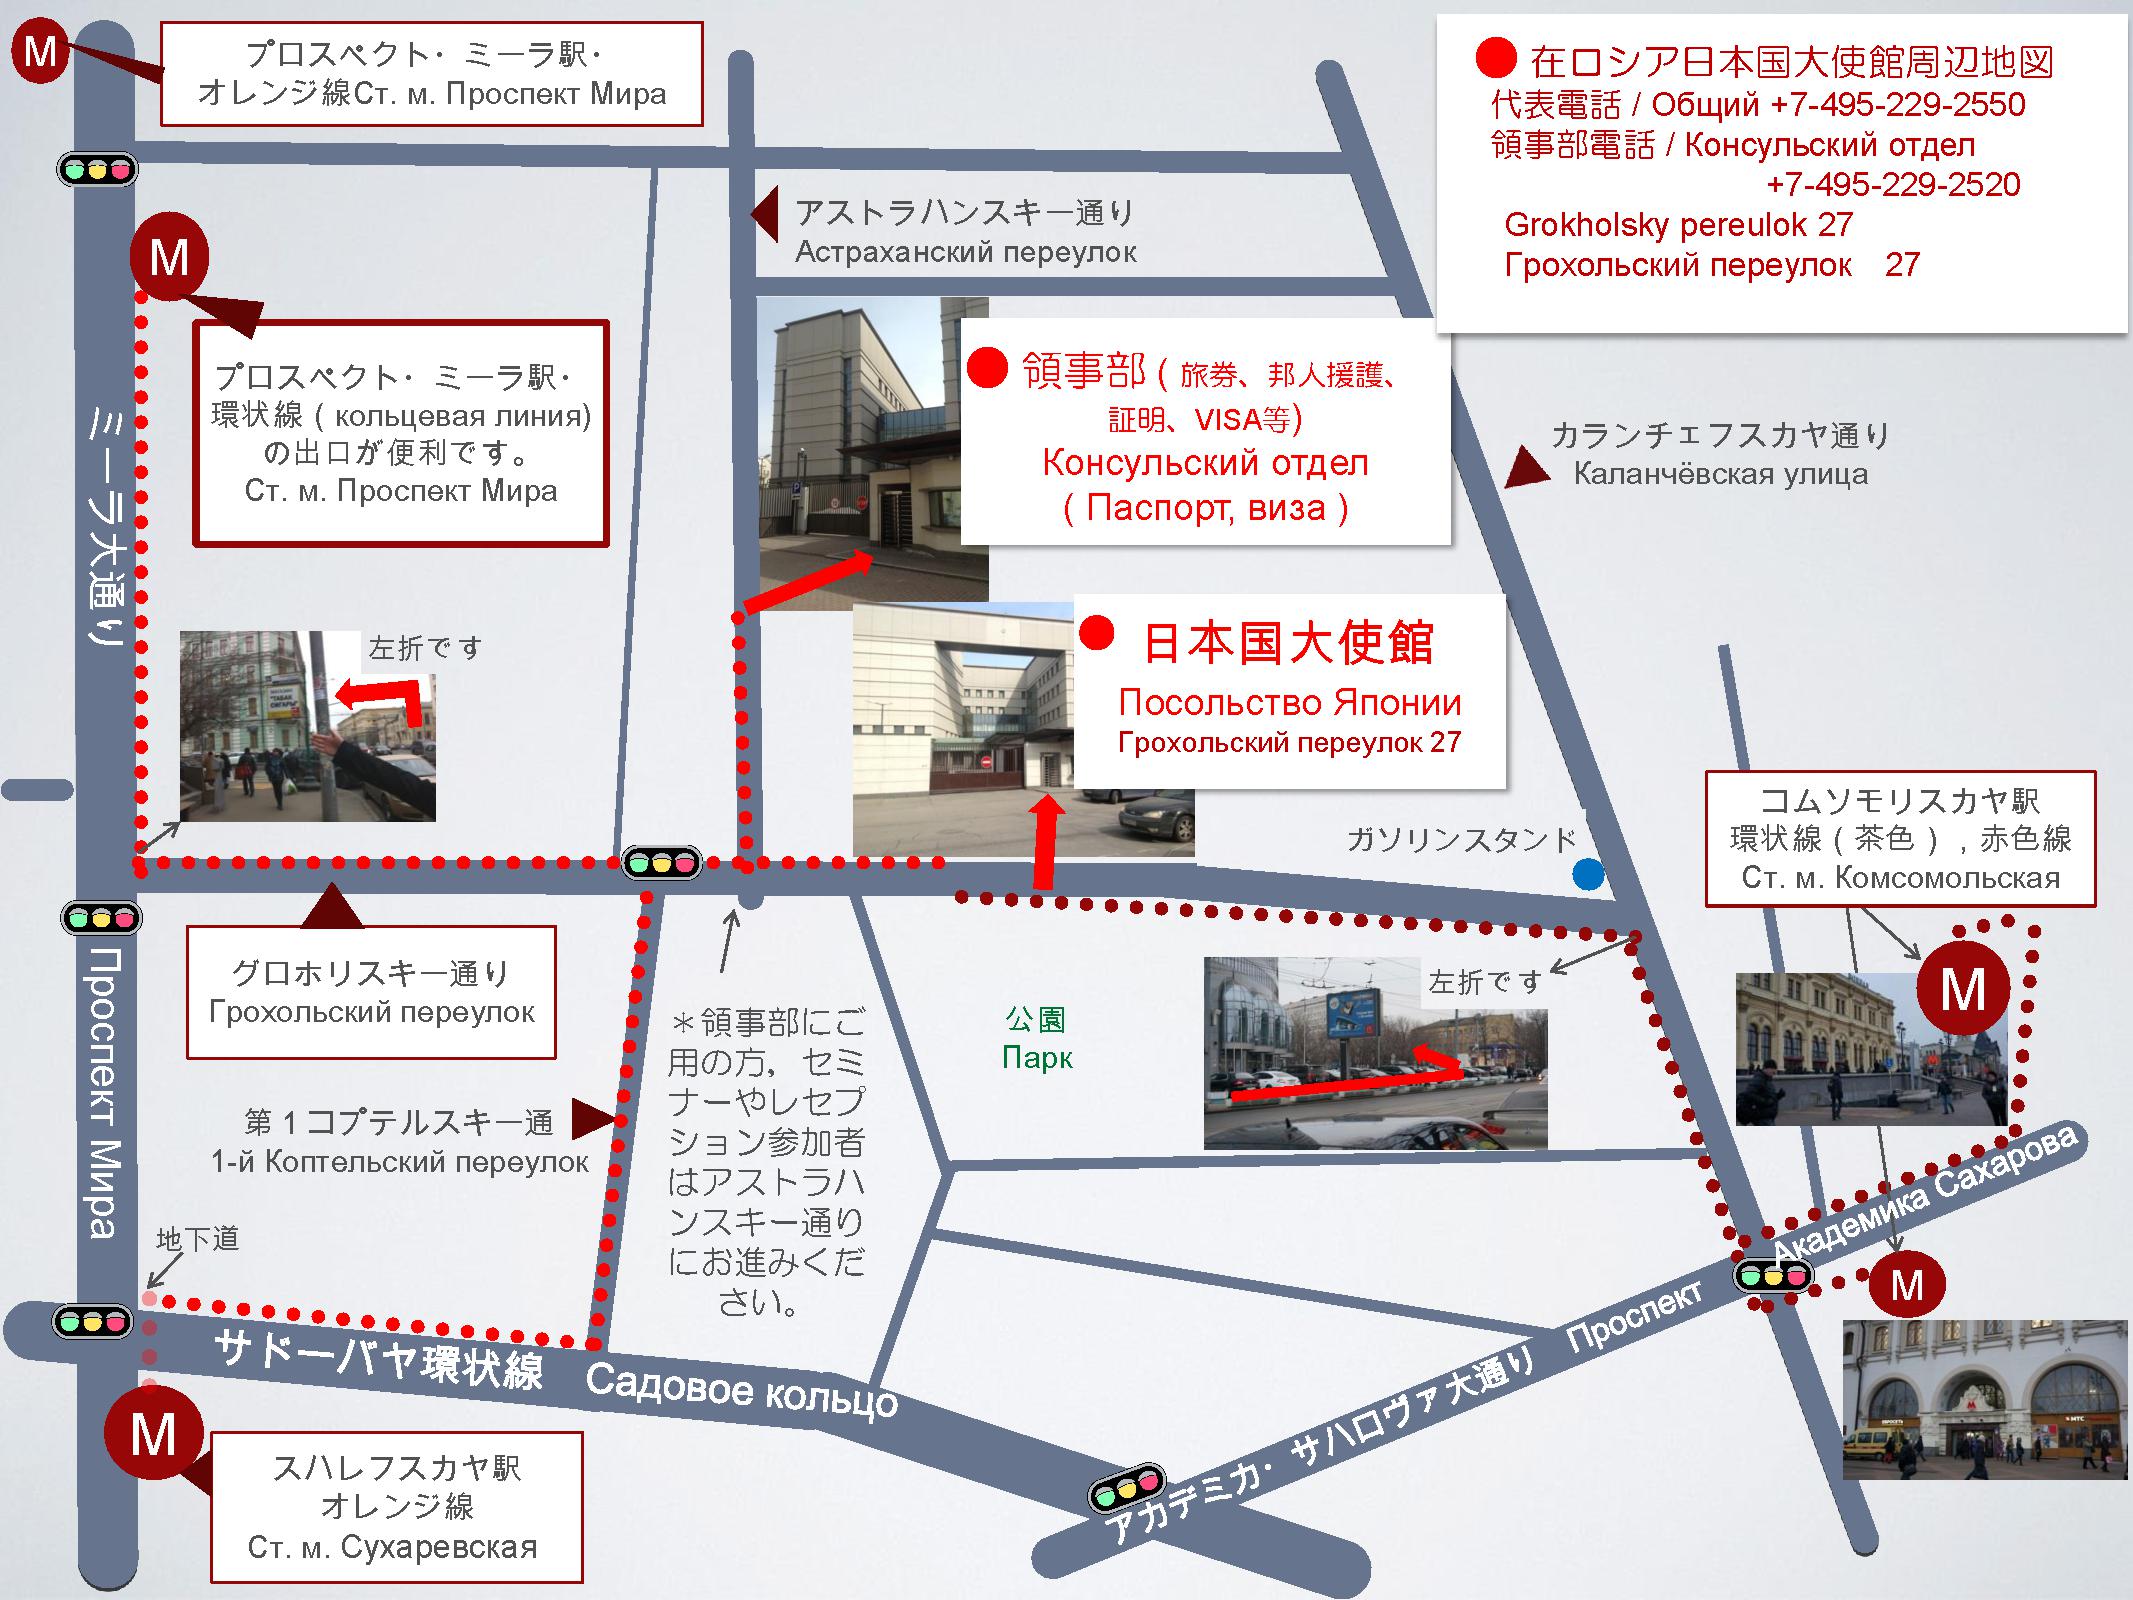 Схема проезда в посольство Японии в Москве